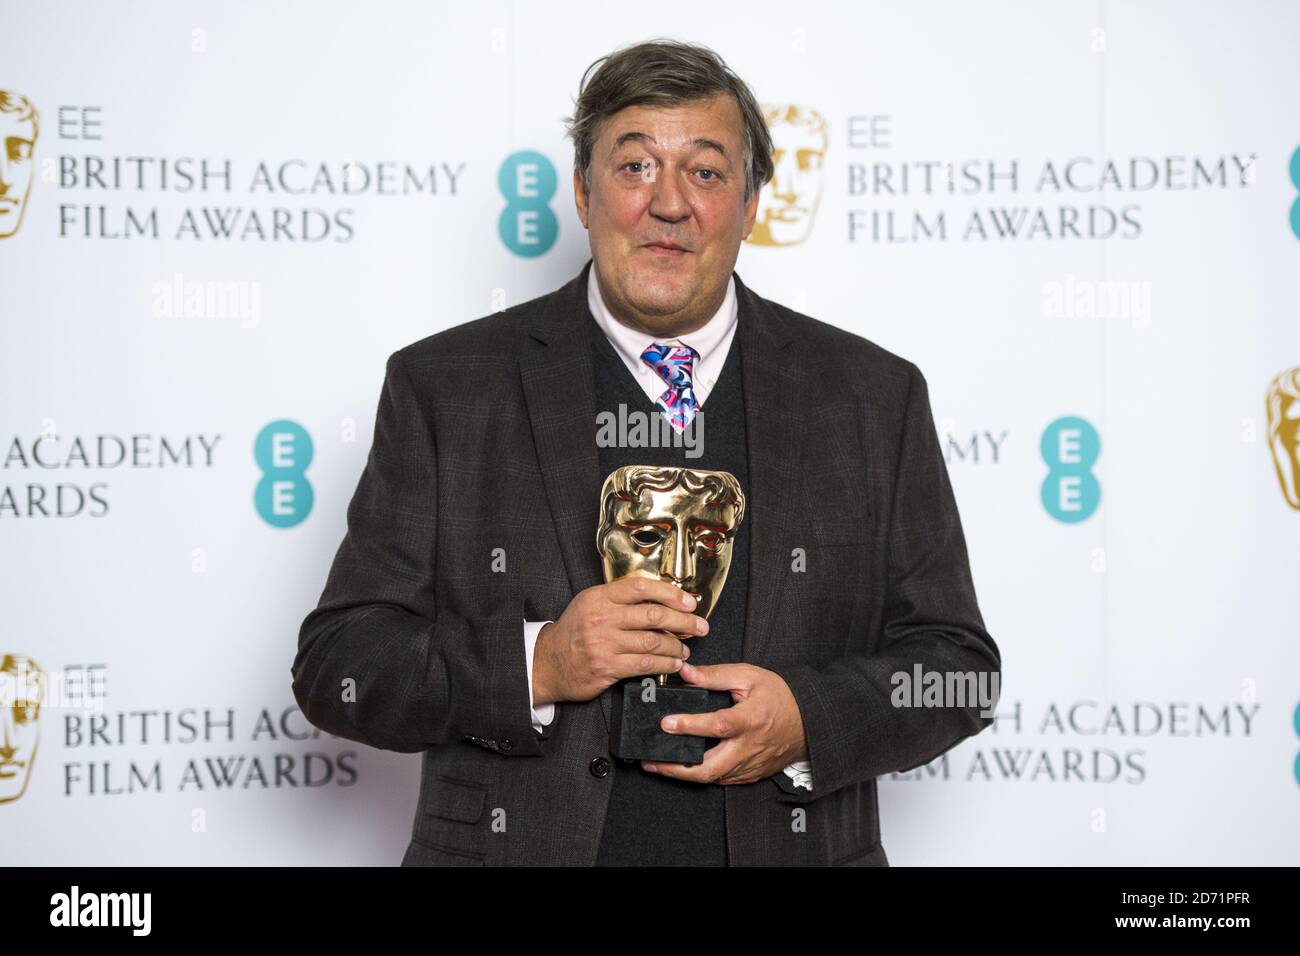 Stephen Fry fotografió en un fotocentro para anunciar las nominaciones para los EE British Academy Film Awards en 2016, en Bafta, en el centro de Londres. Foto de stock